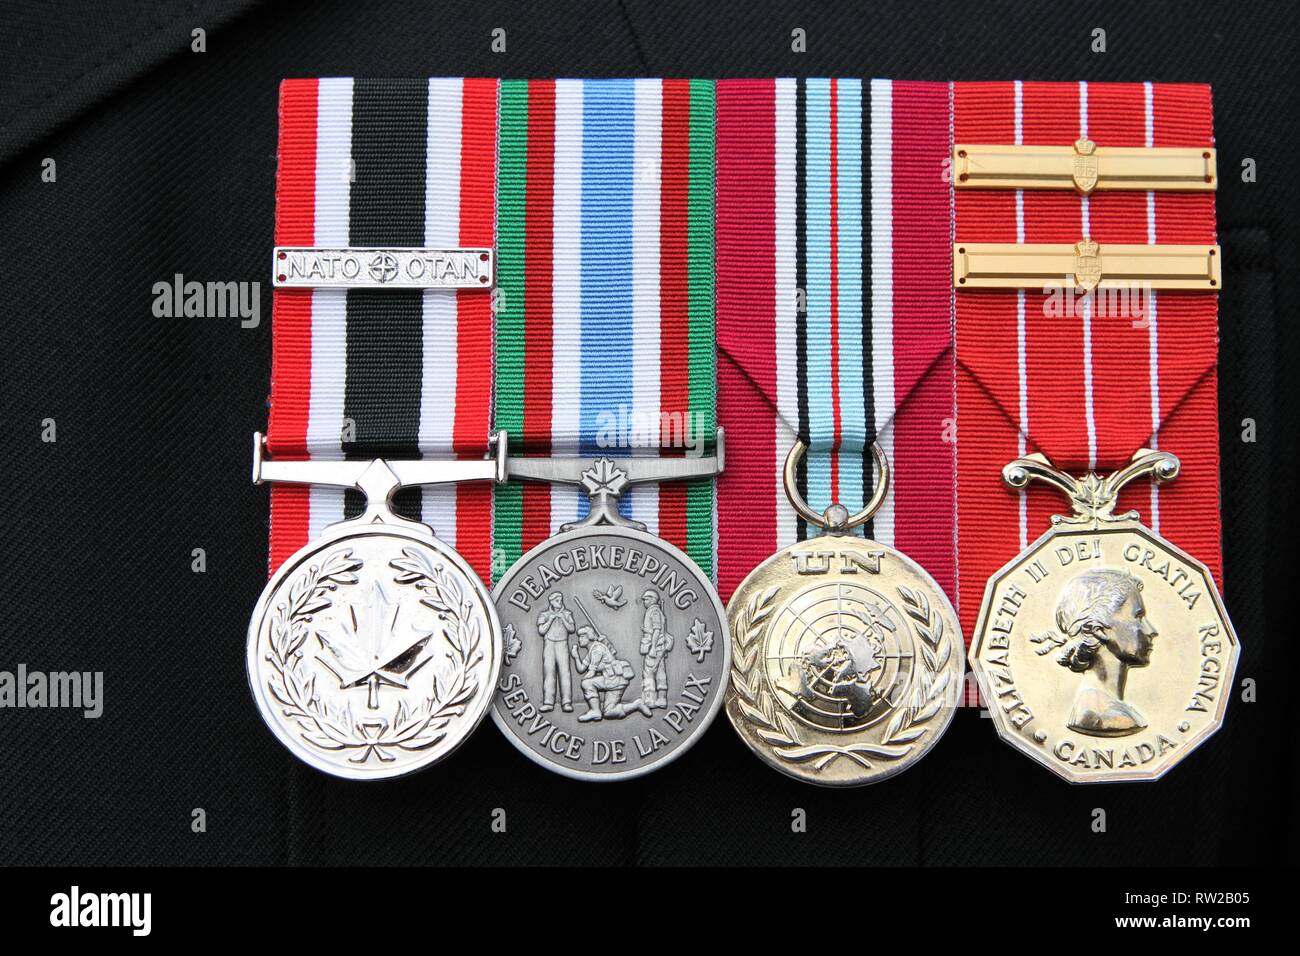 Médailles de guerre sur des rubans colorés Banque D'Images